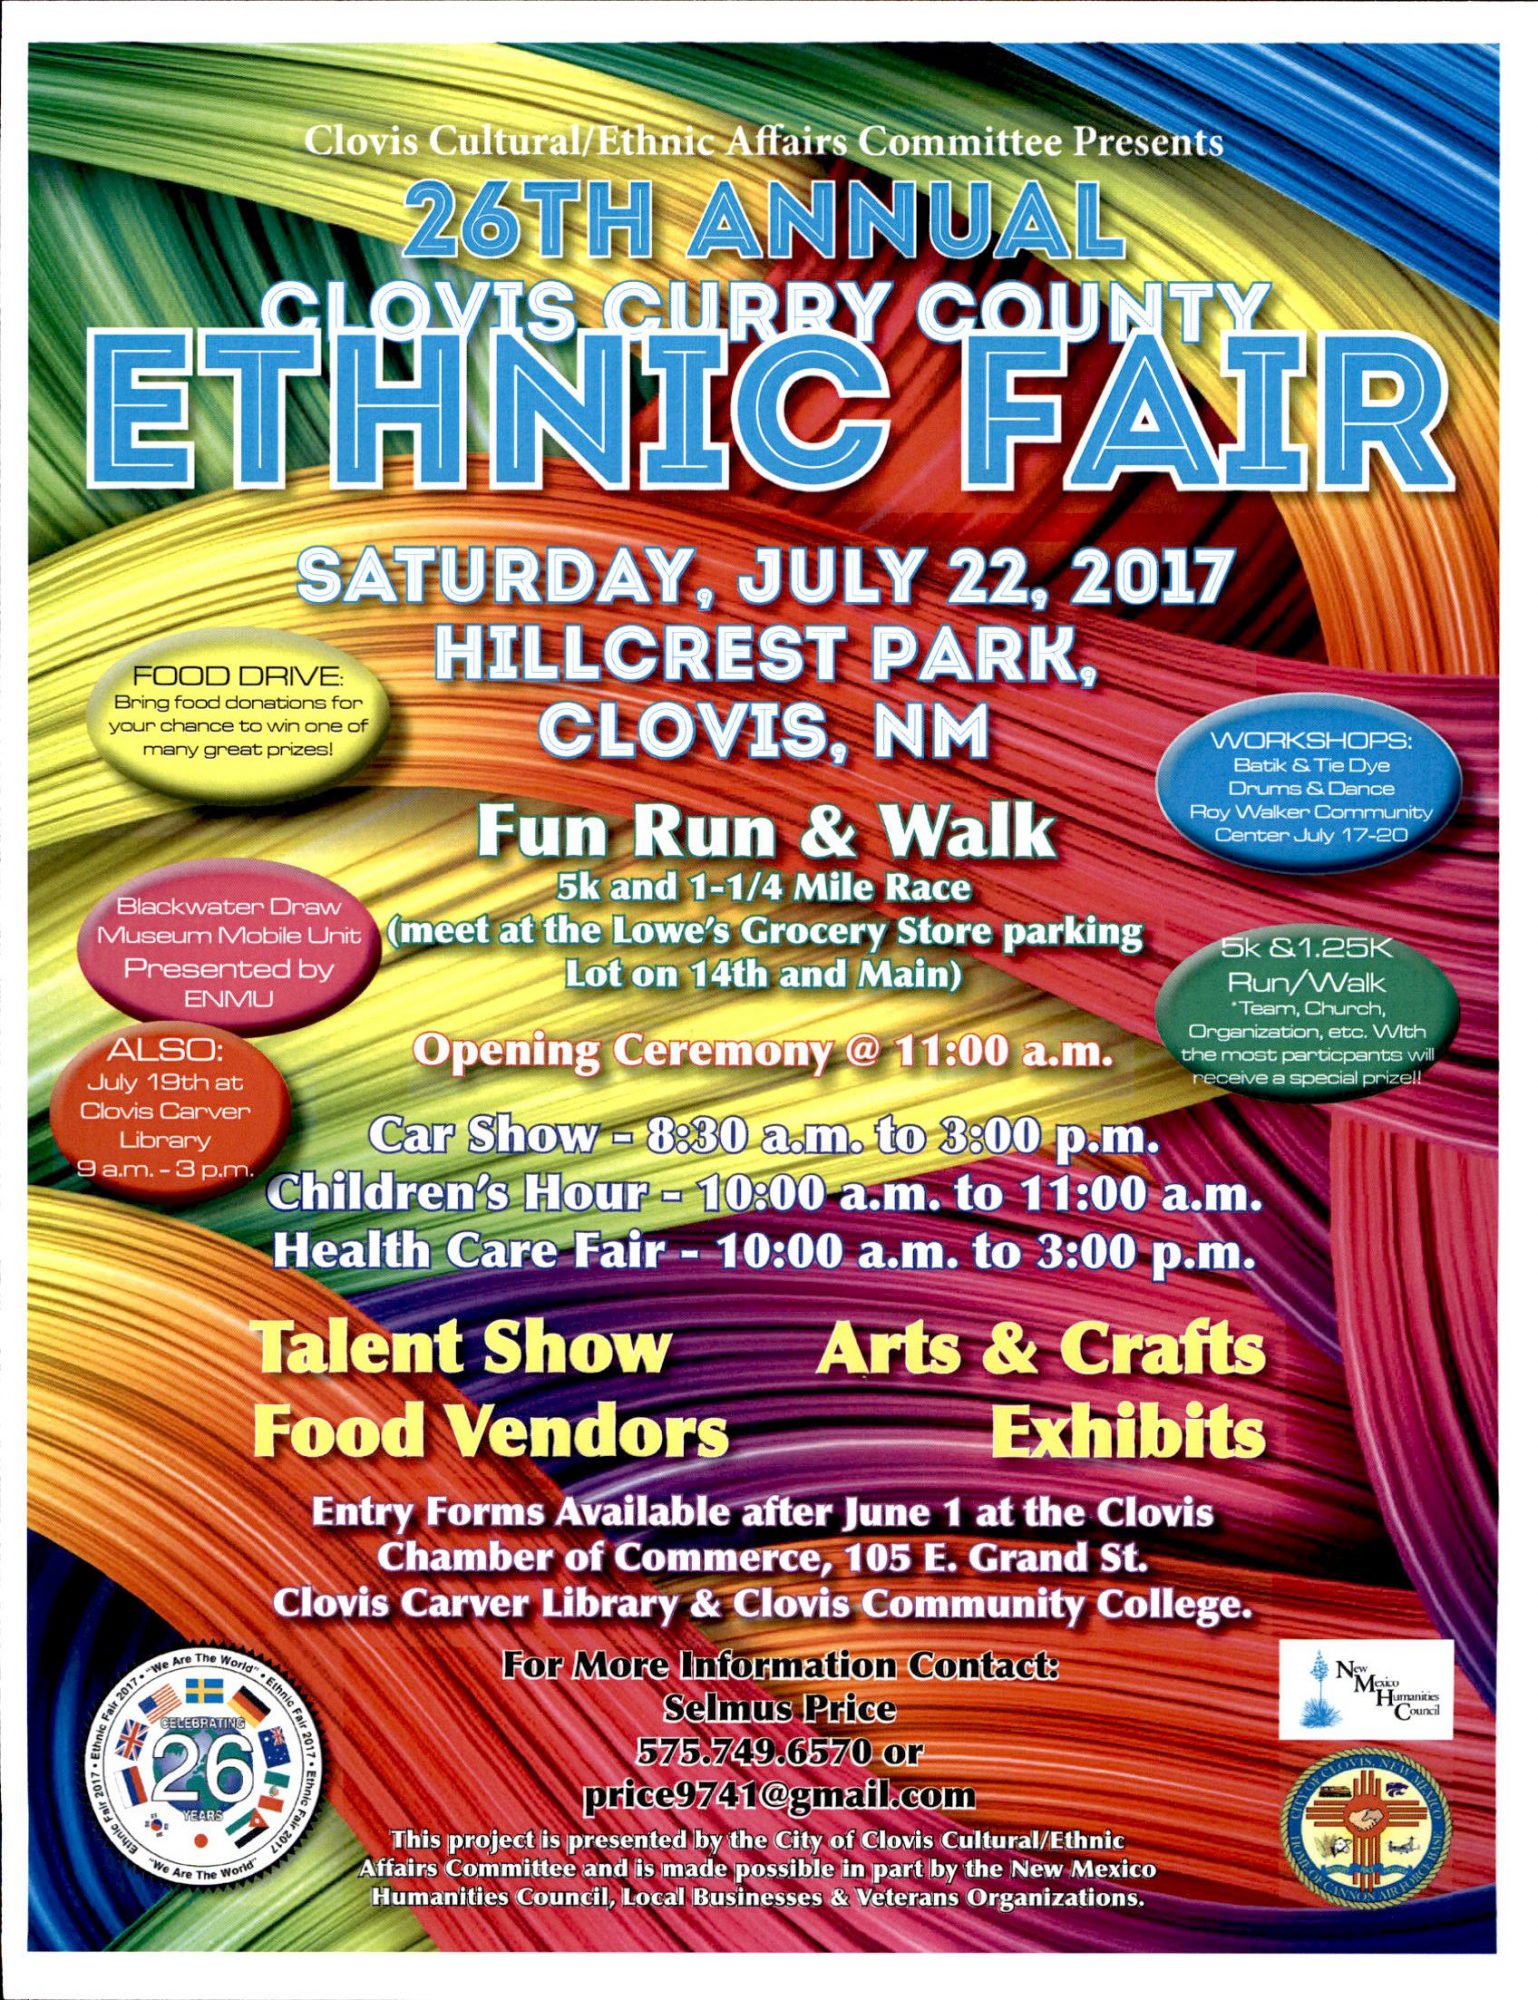 24th Annual Clovis/curry county ethnic fair City of Clovis, New Mexico